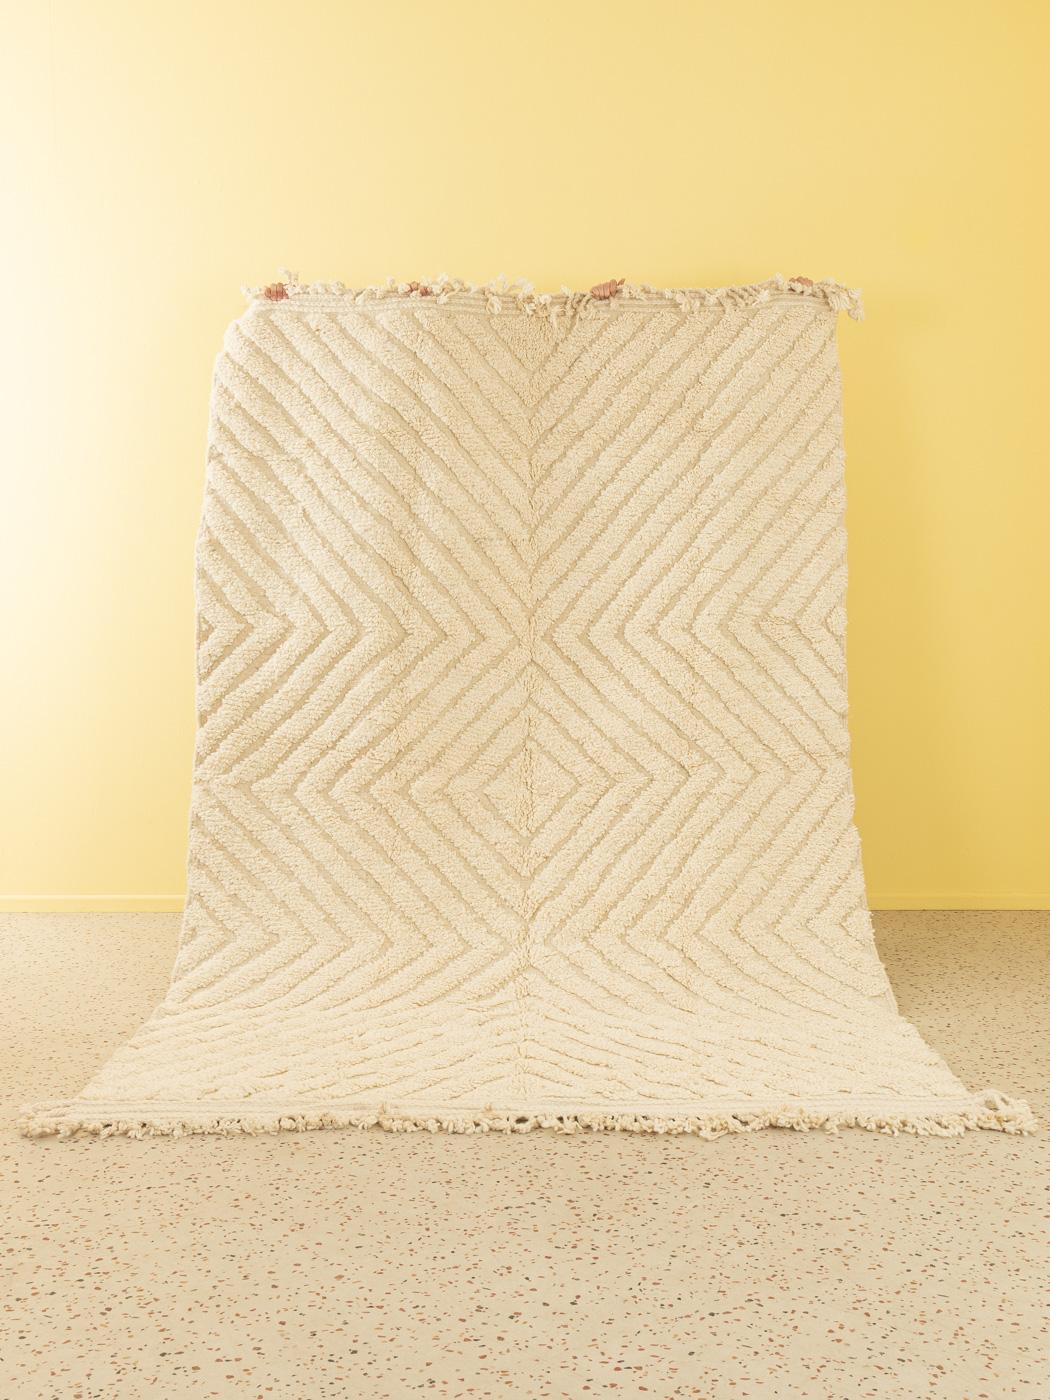 Invisible Cream ist ein moderner Teppich aus 100 % Wolle - dick und weich, angenehm unter den Füßen. Unsere Berberteppiche werden von Amazigh-Frauen im Atlasgebirge handgewebt und handgeknüpft. Diese Gemeinschaften stellen schon seit Tausenden von